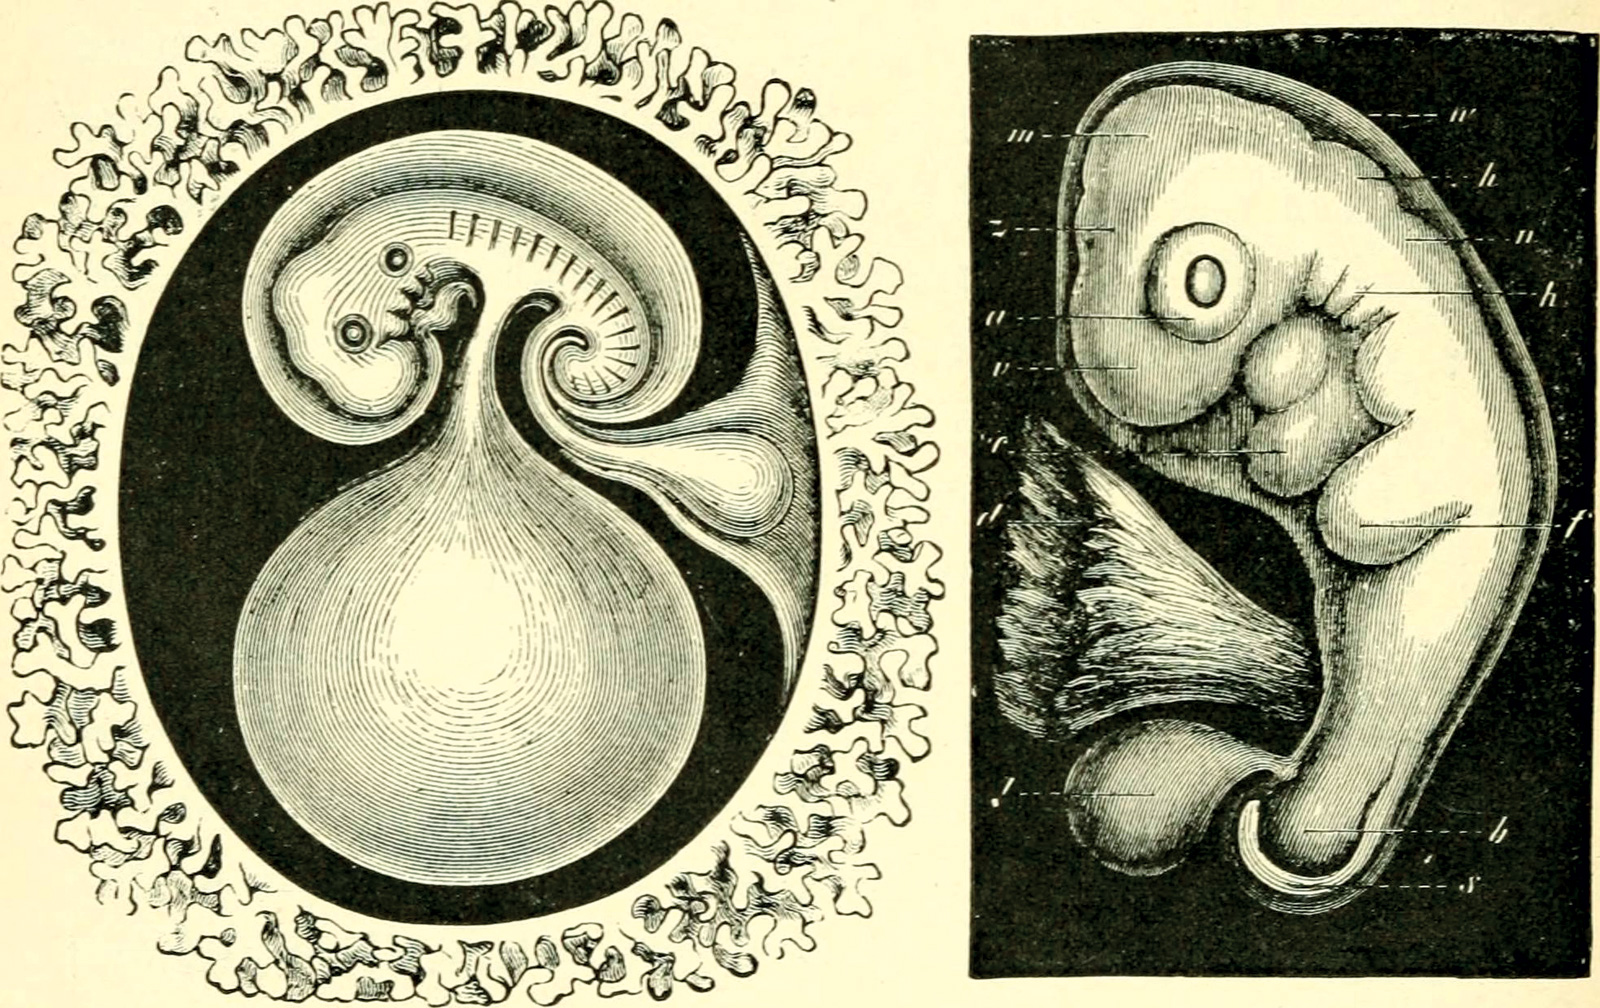 Ernst Haeckel, *La evolución del hombre, una exposición de los principales puntos de ontogenia y filogenia humana*, 1897